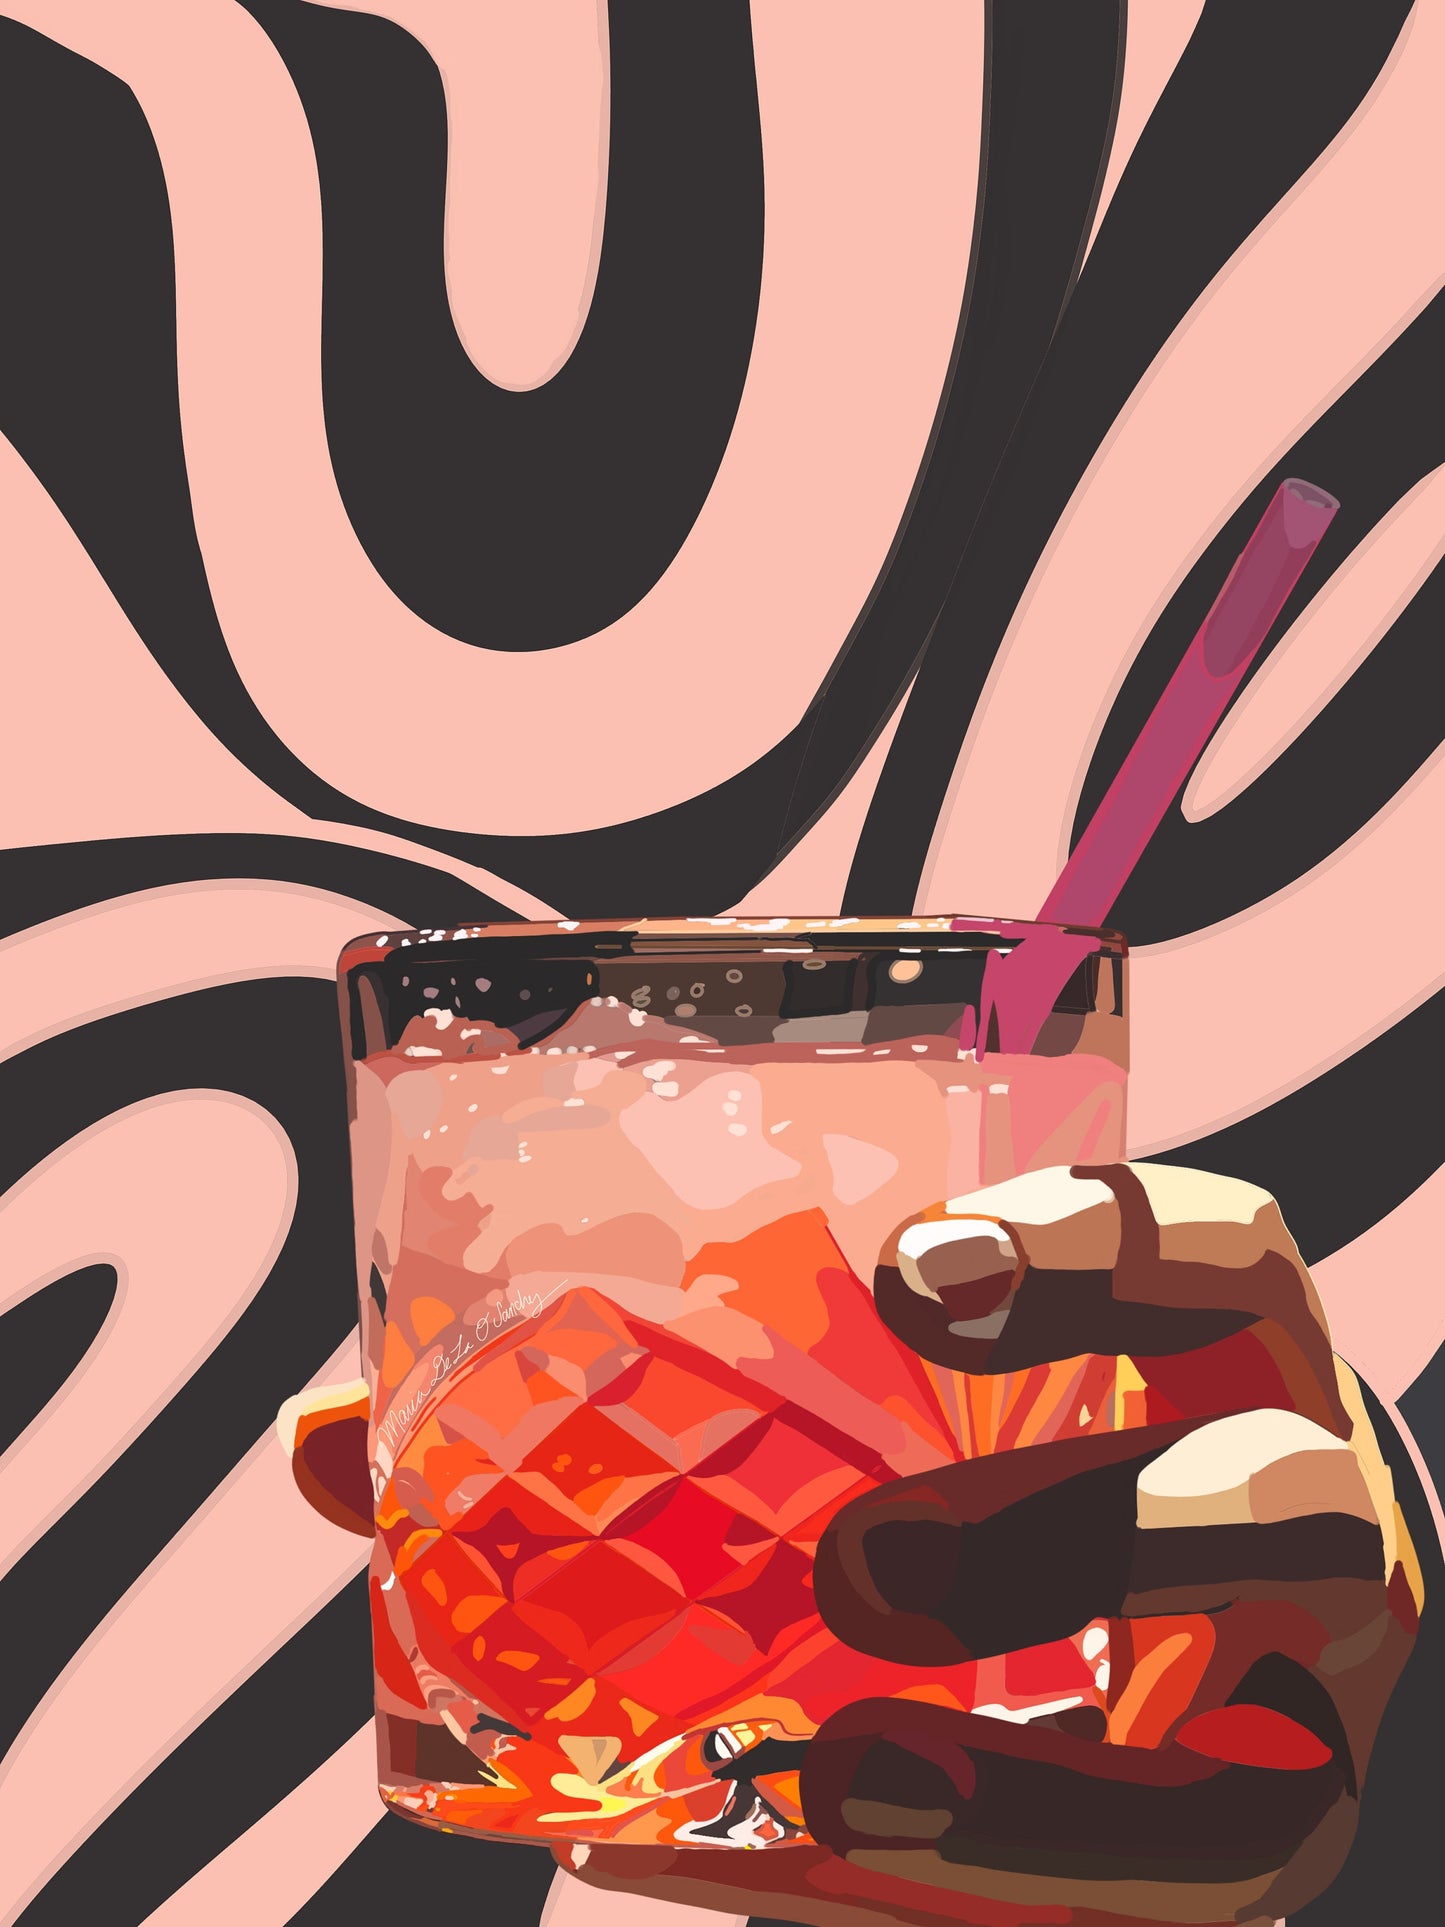 A Fun Cocktail Print